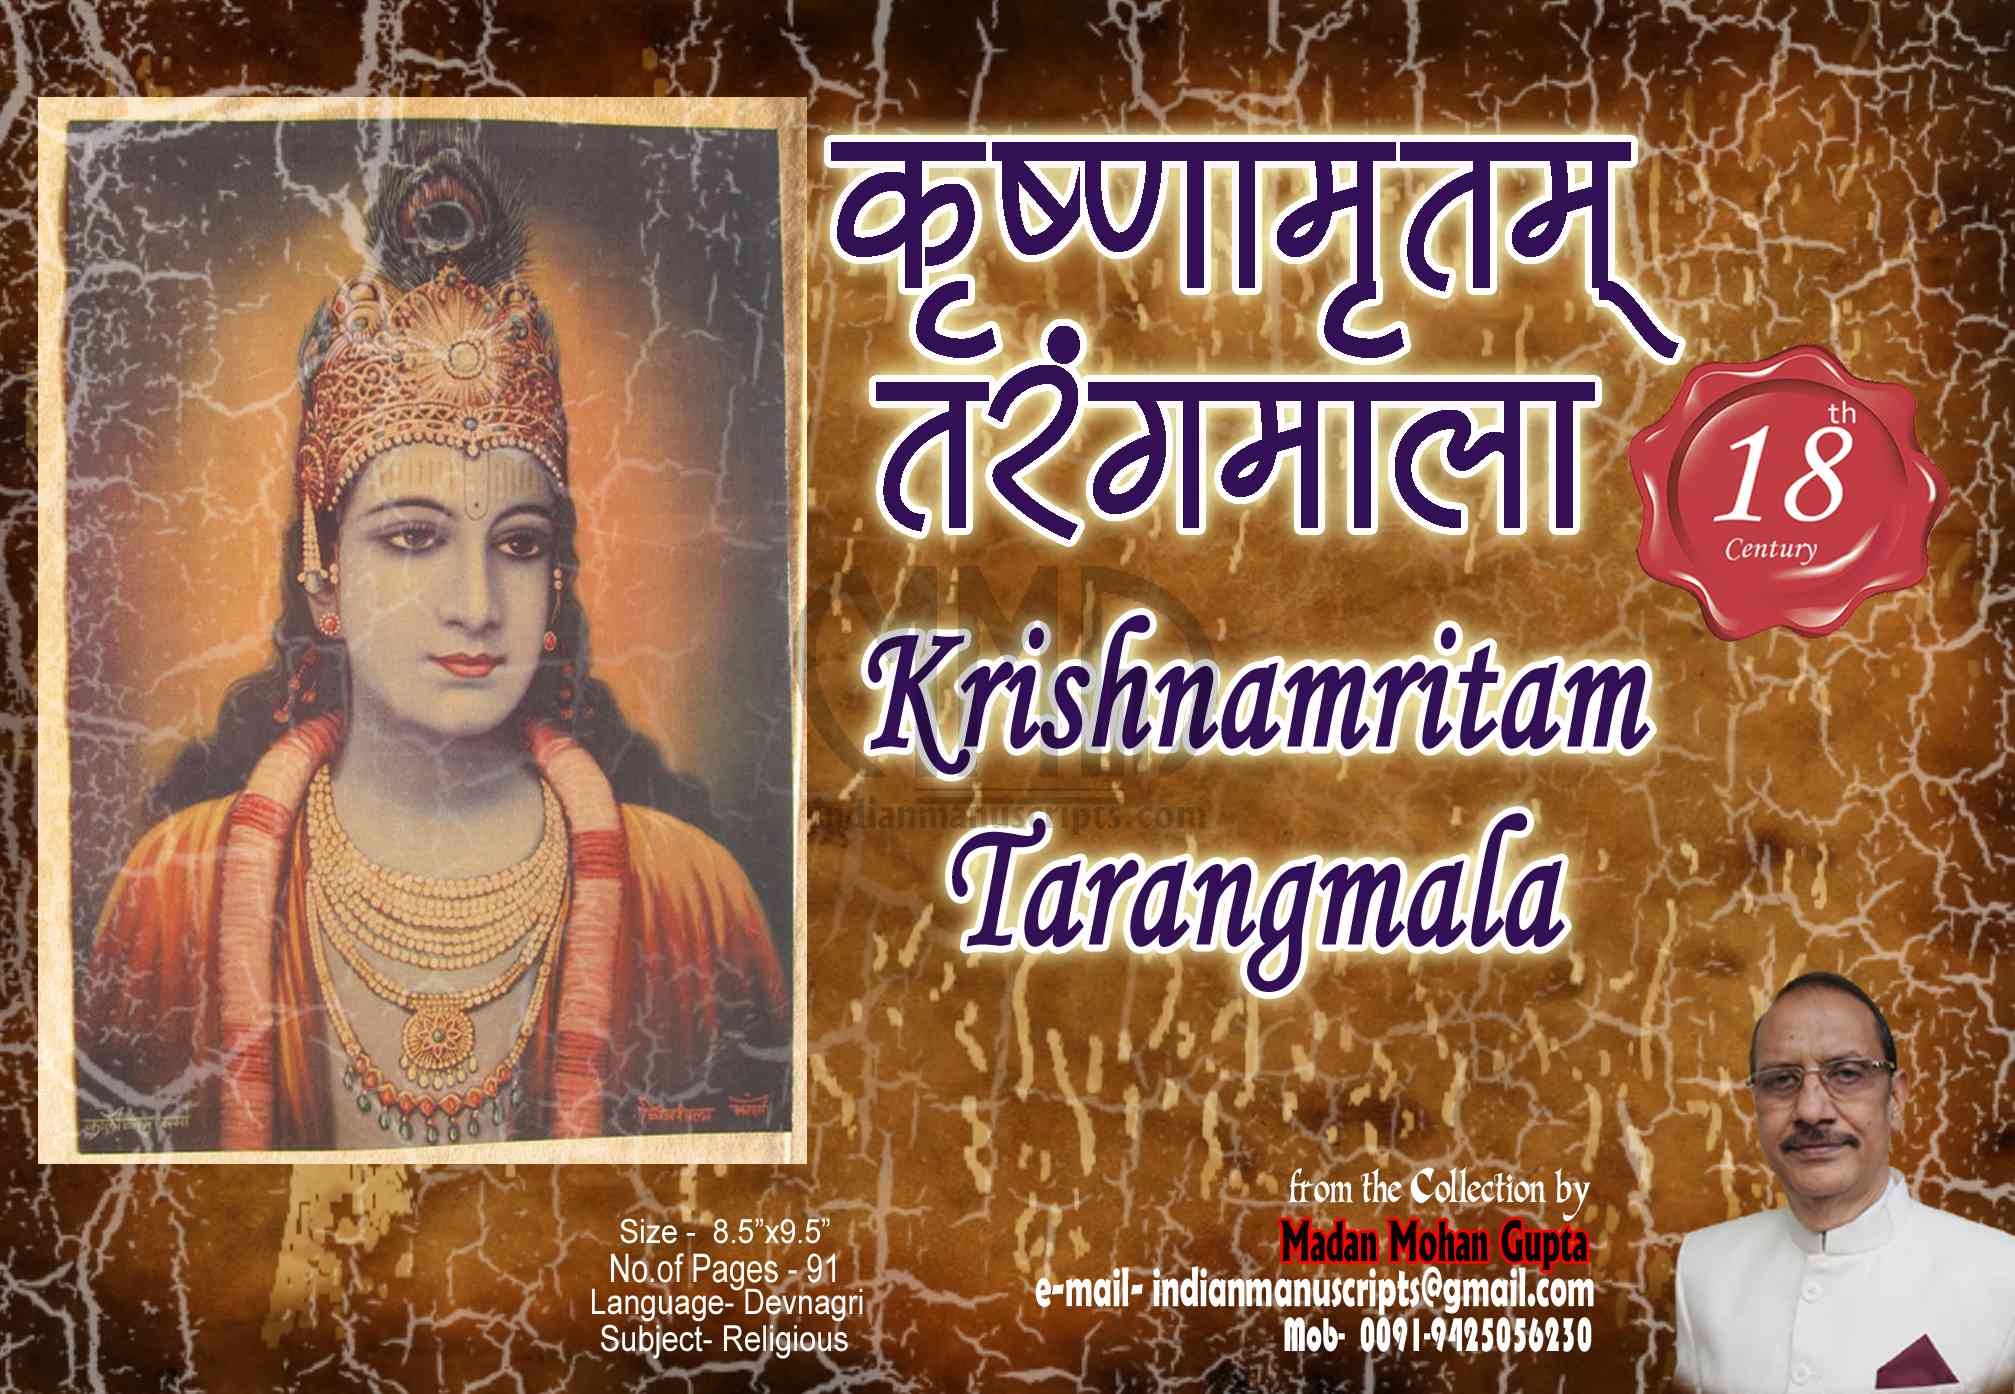 Krishnamritam Tarangmala